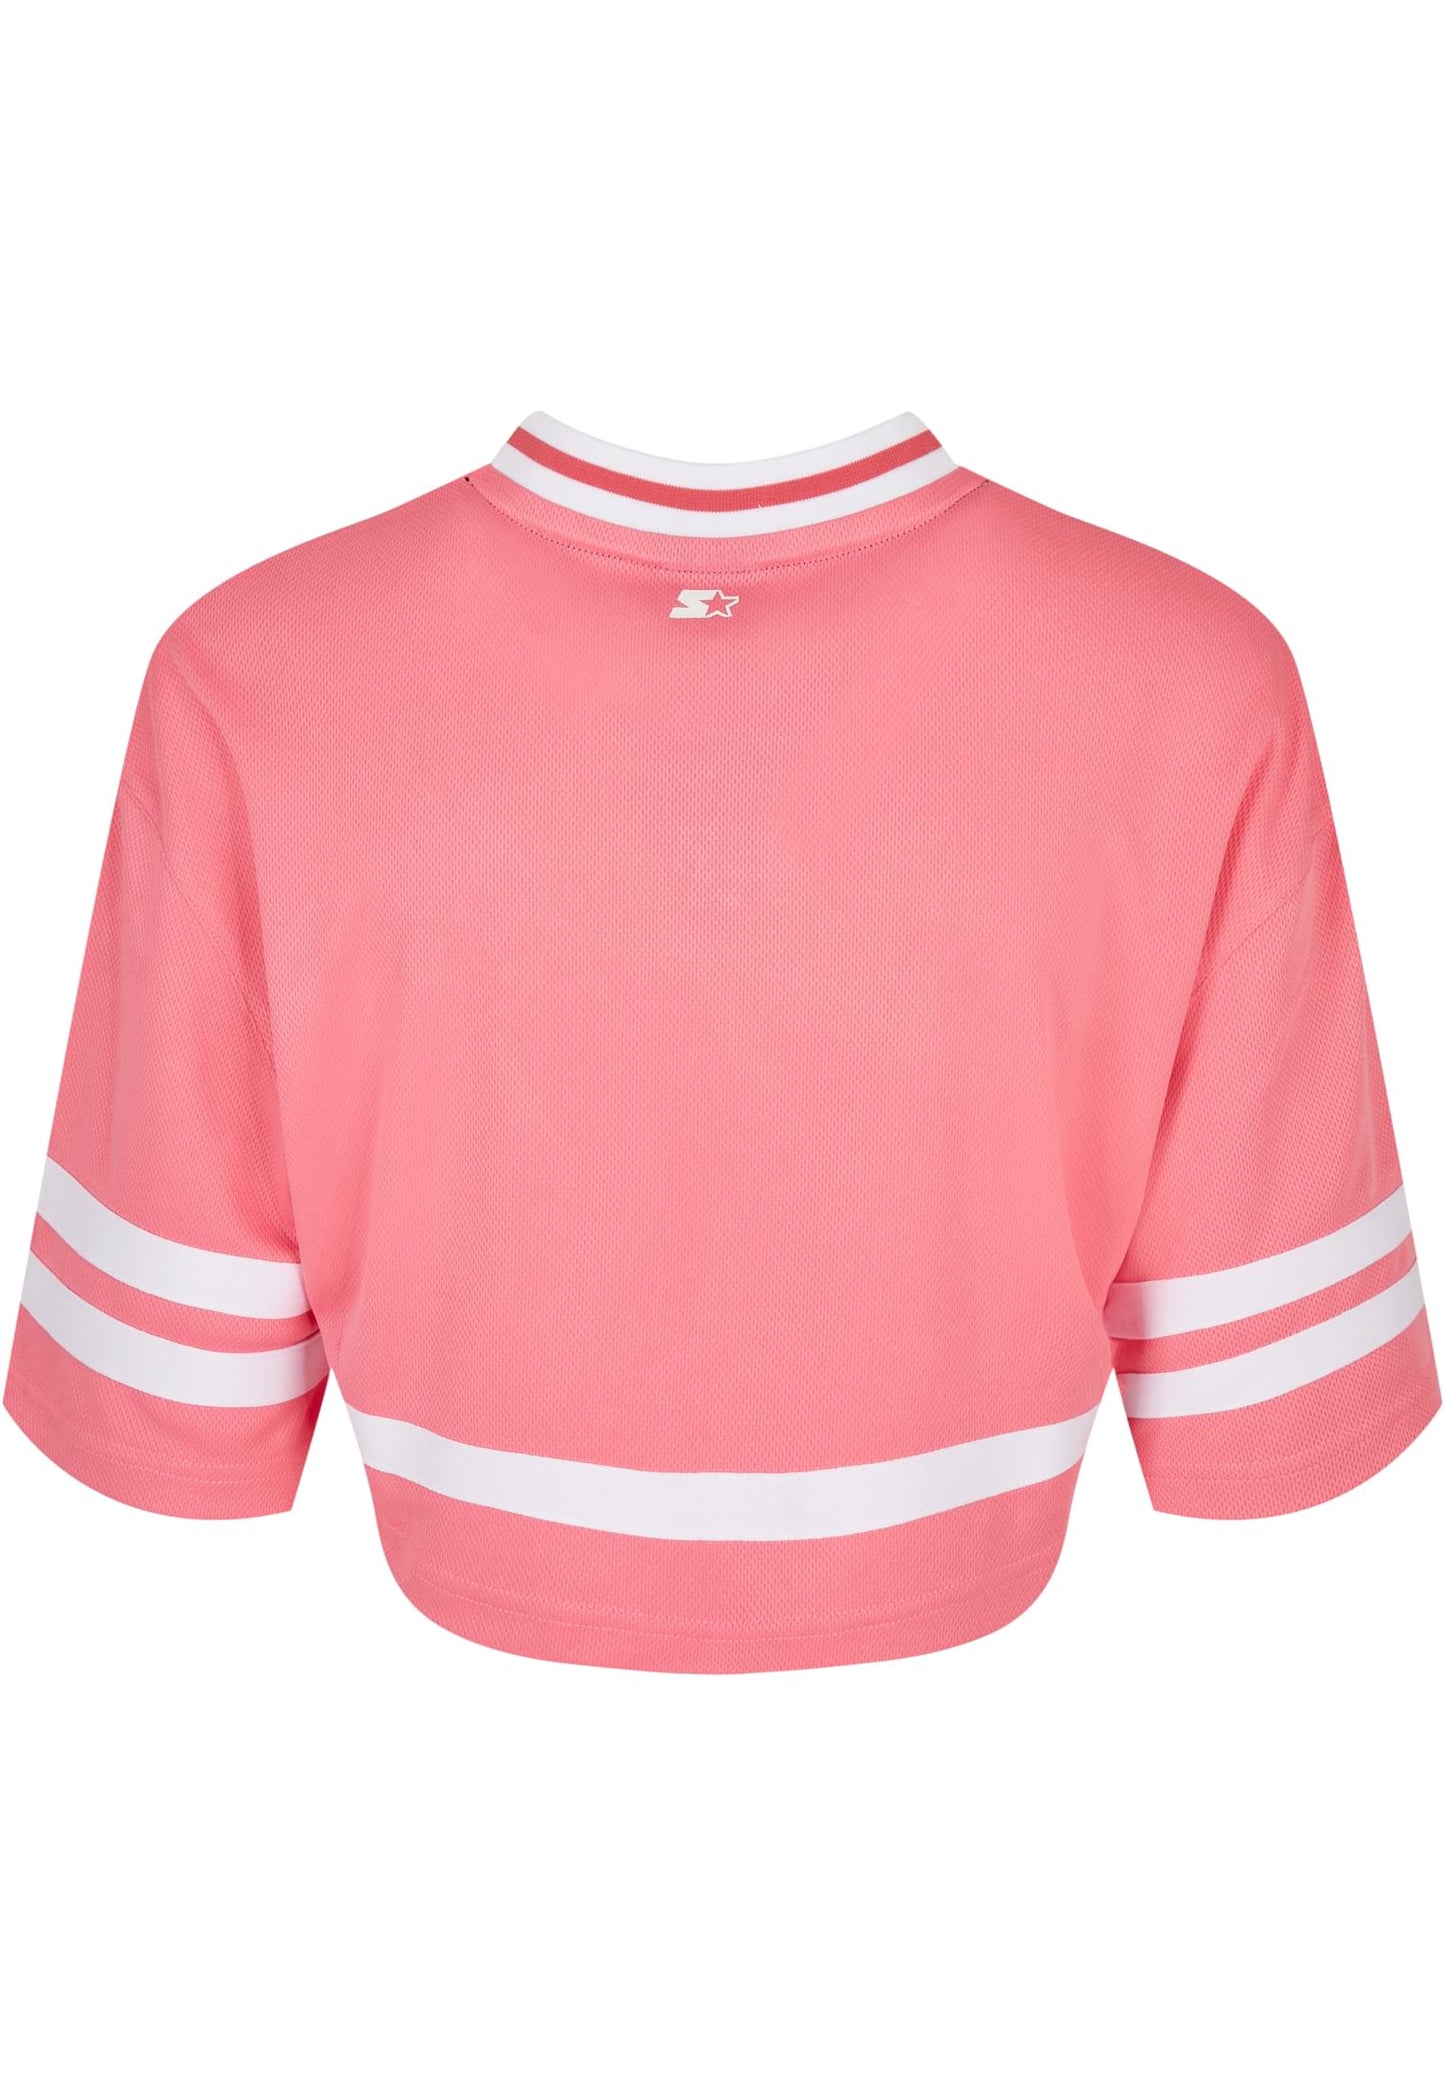 Damen Starter Cropped Mesh Jersey in pink